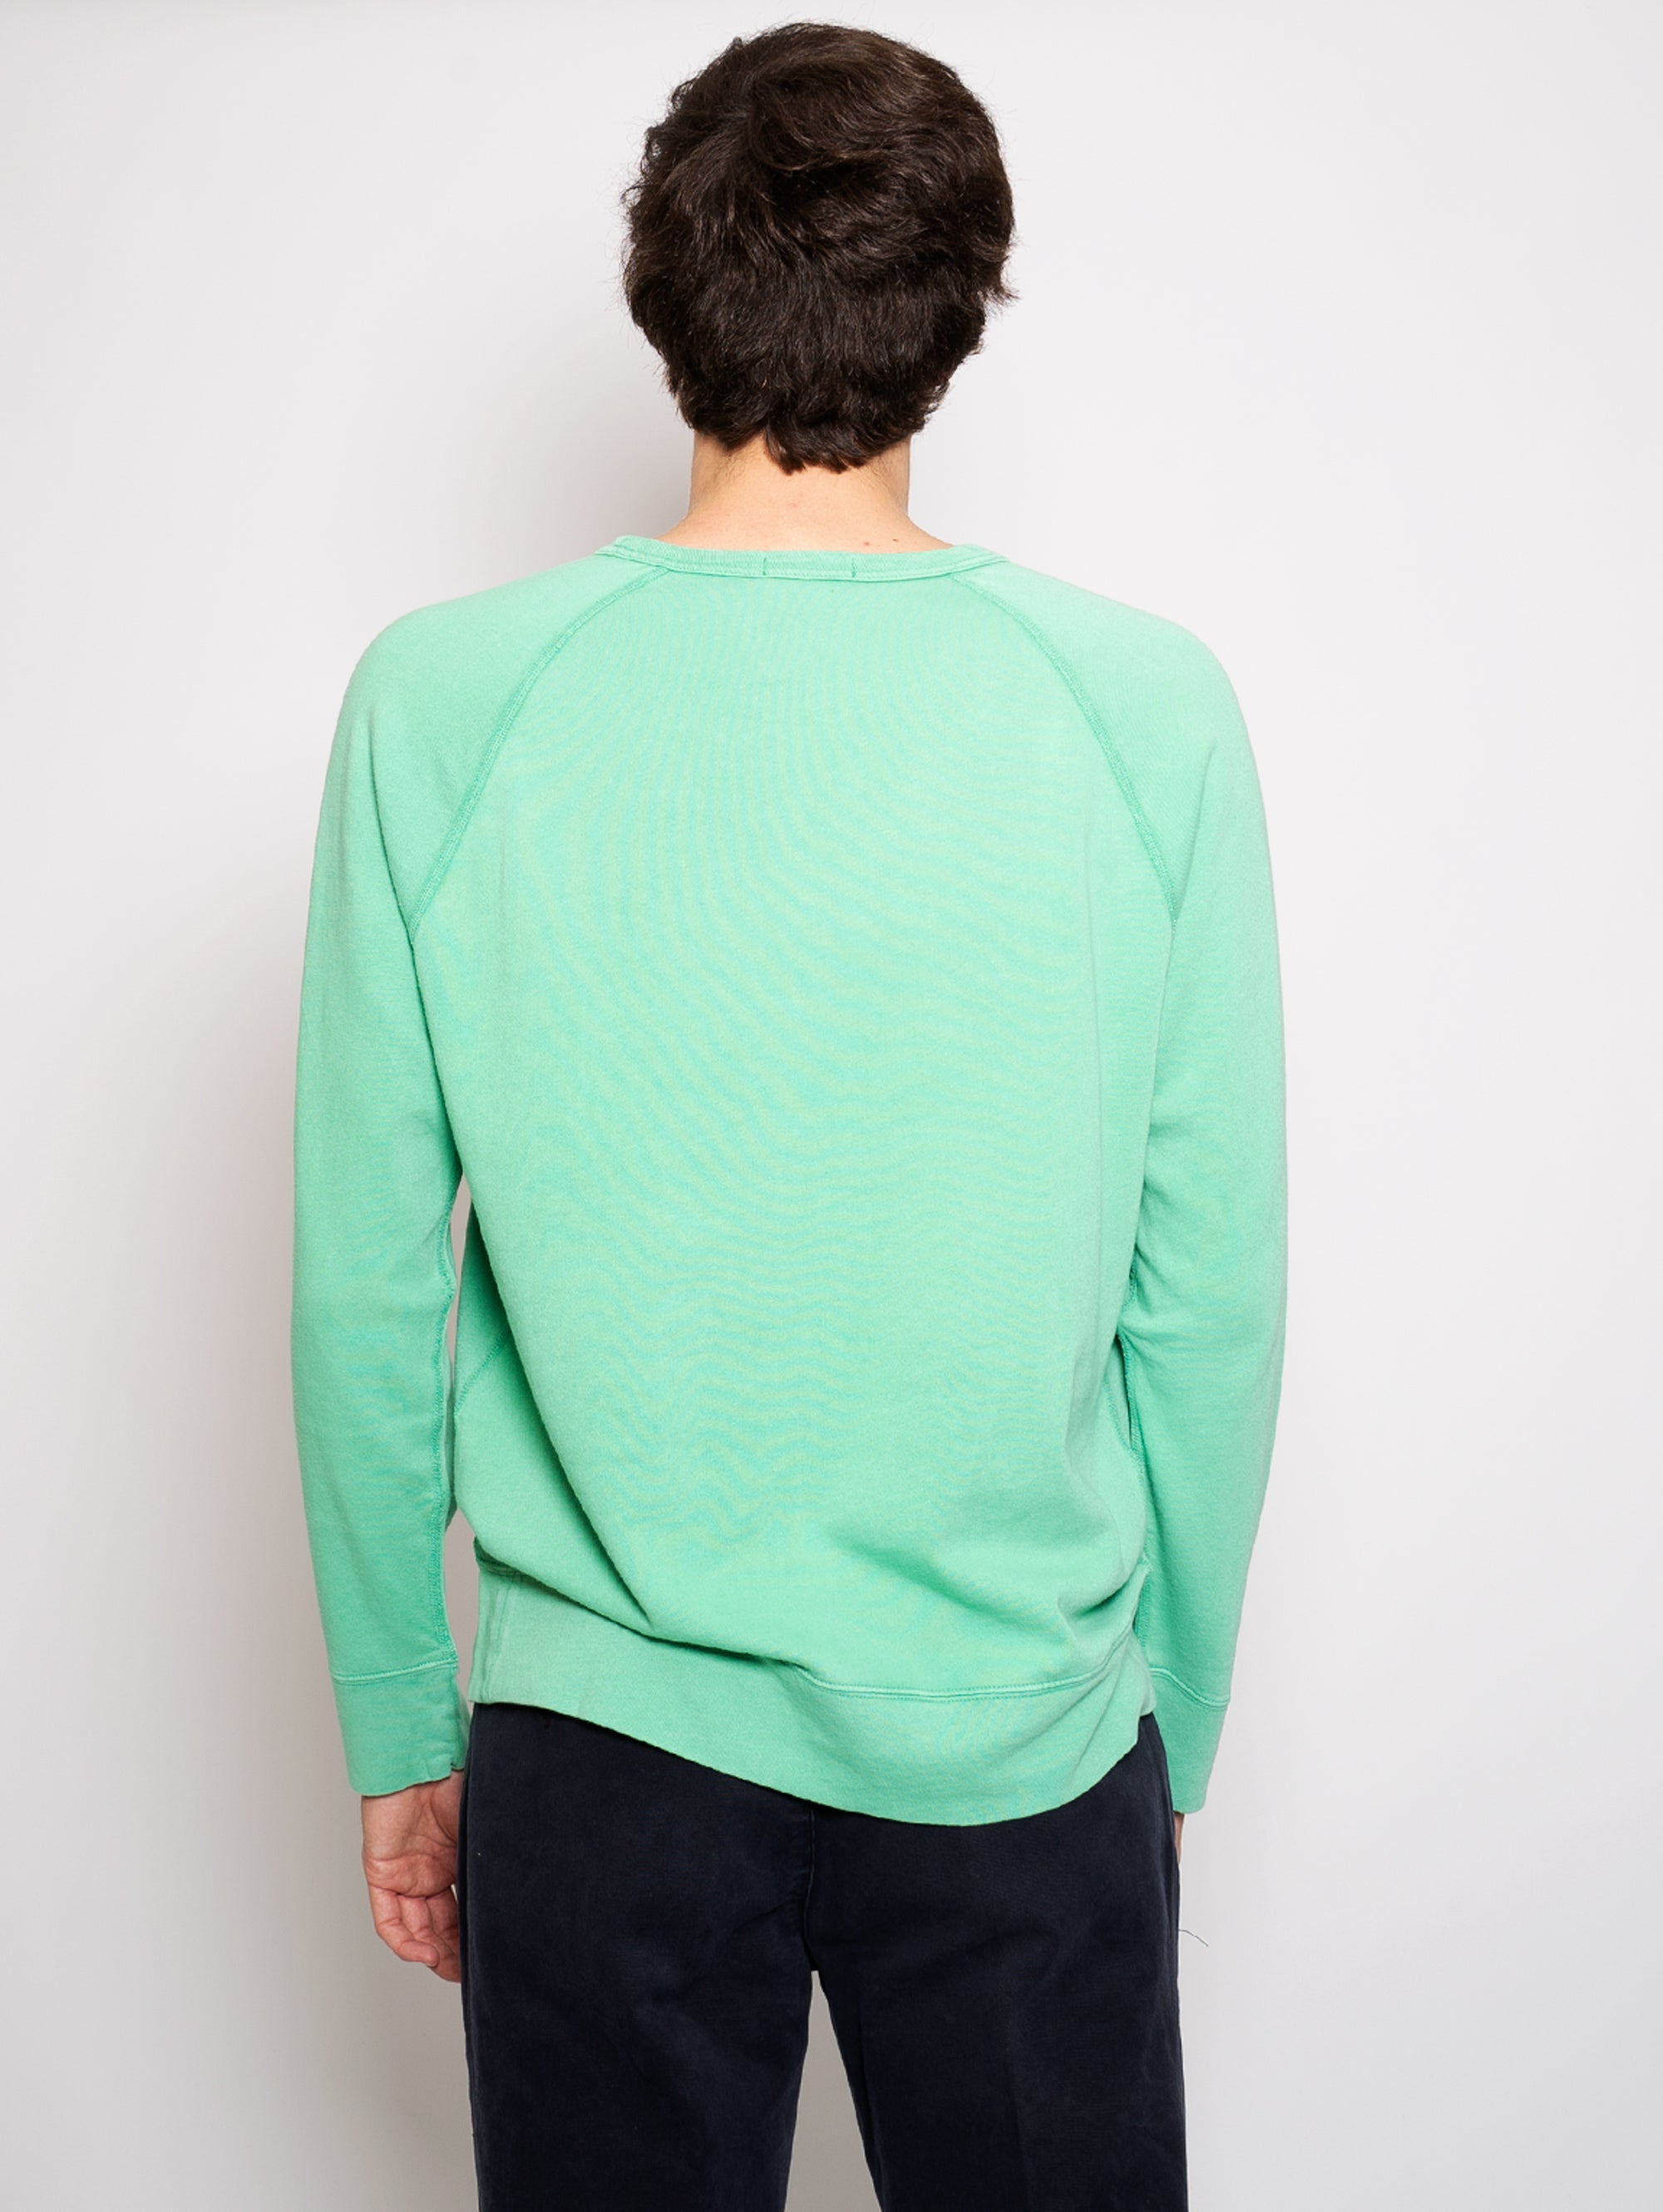 Green Crewneck Sweatshirt with Raglan Sleeves